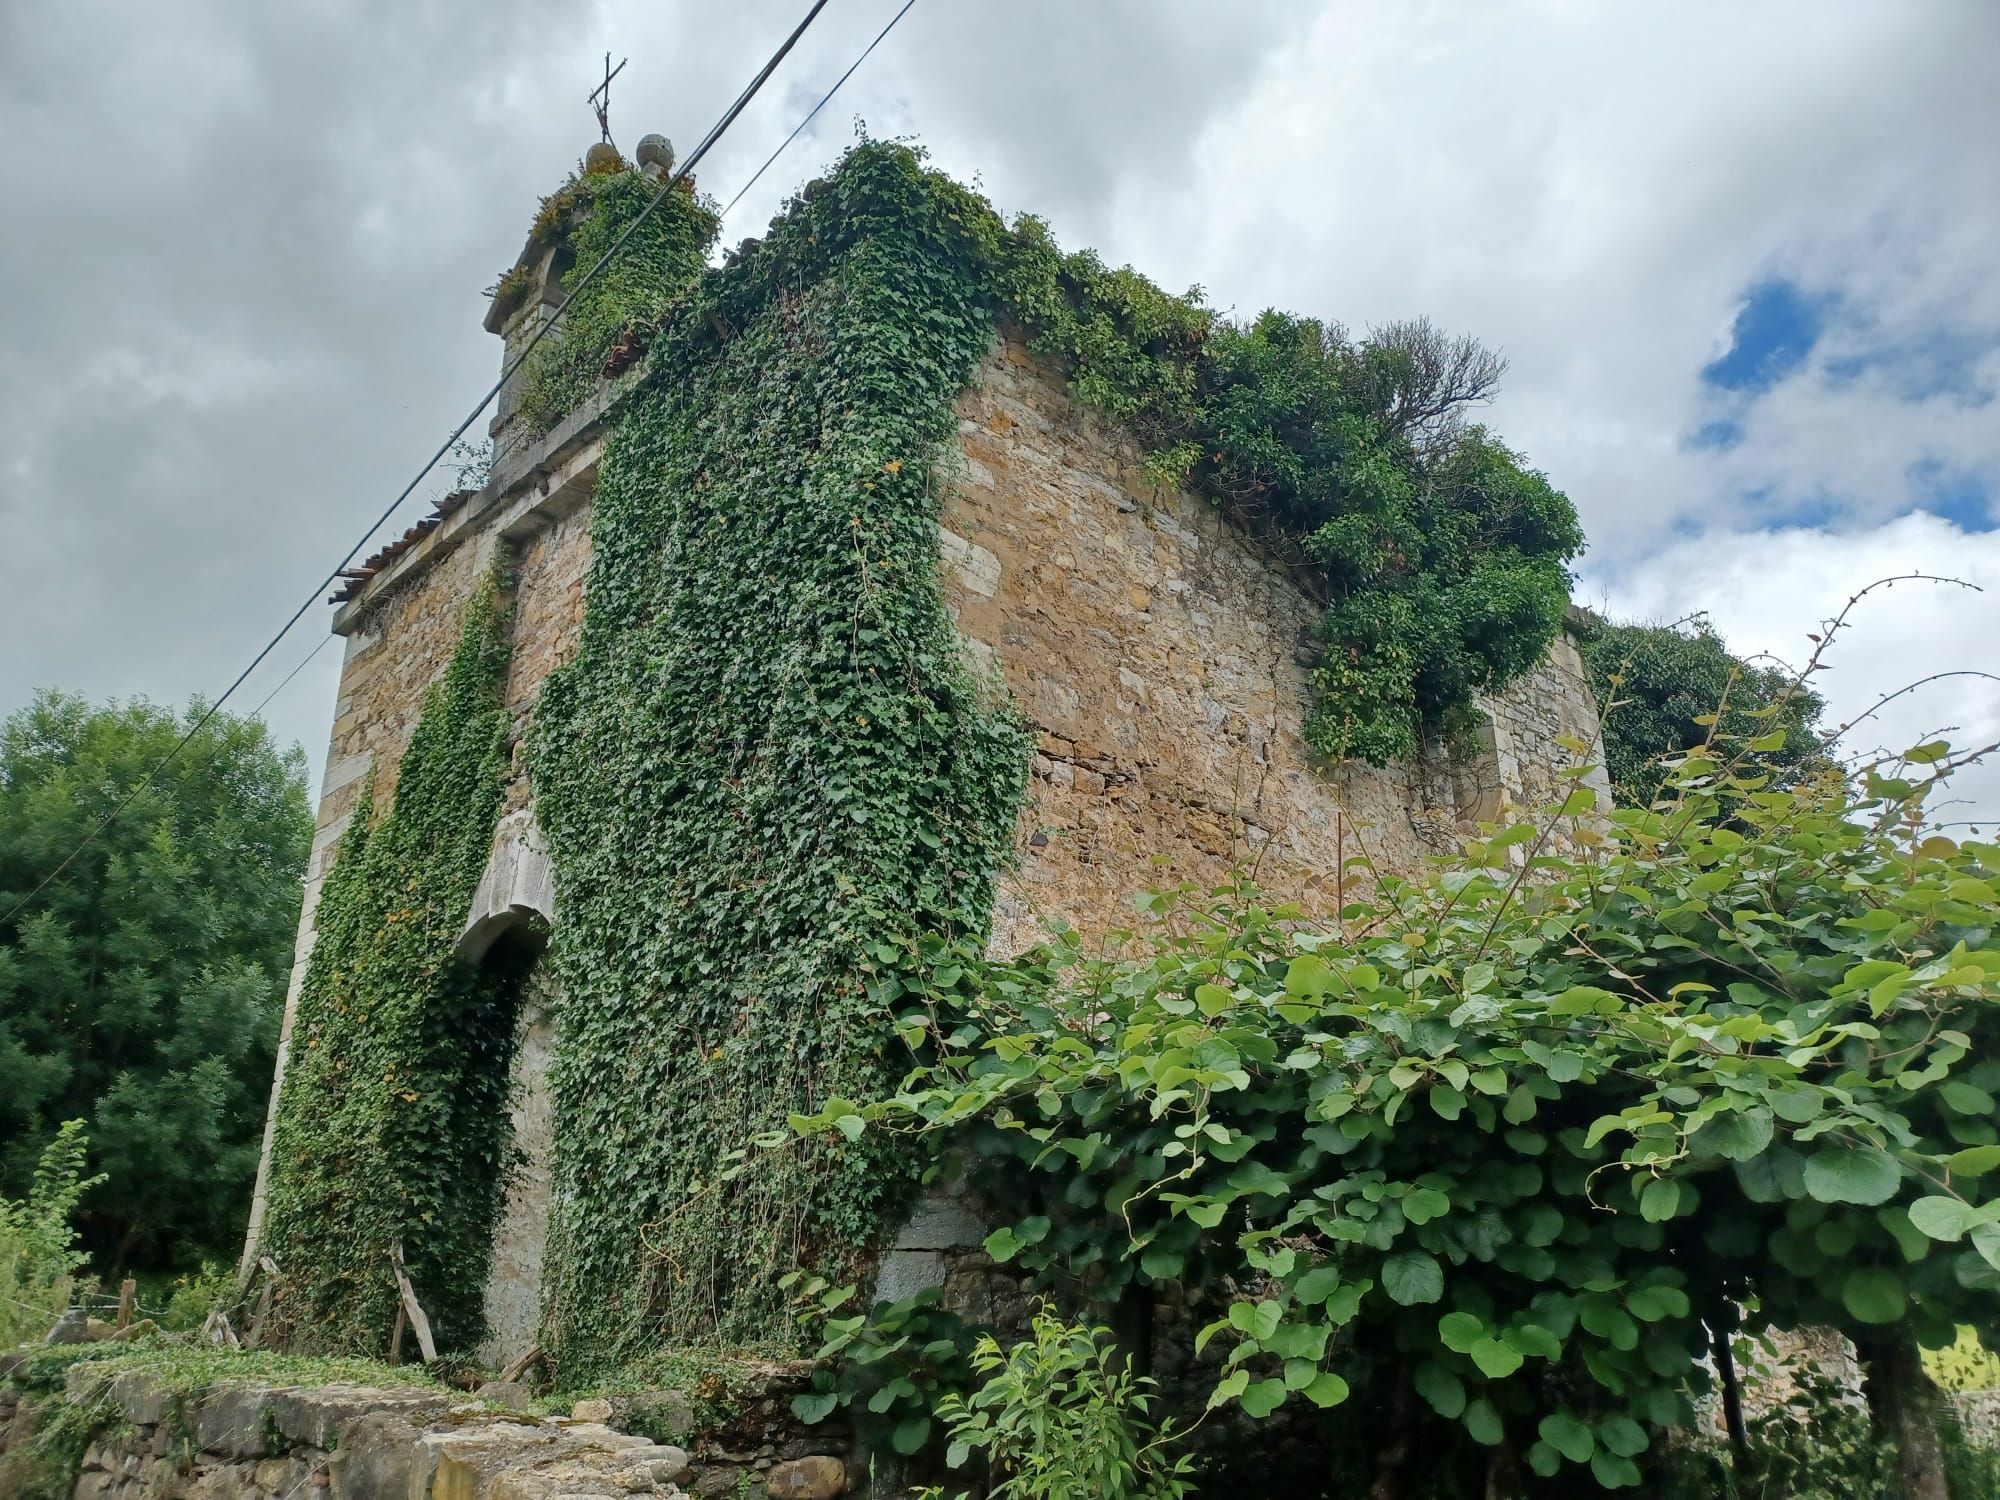 La Torre de Villanueva, el gigante medieval de Grado